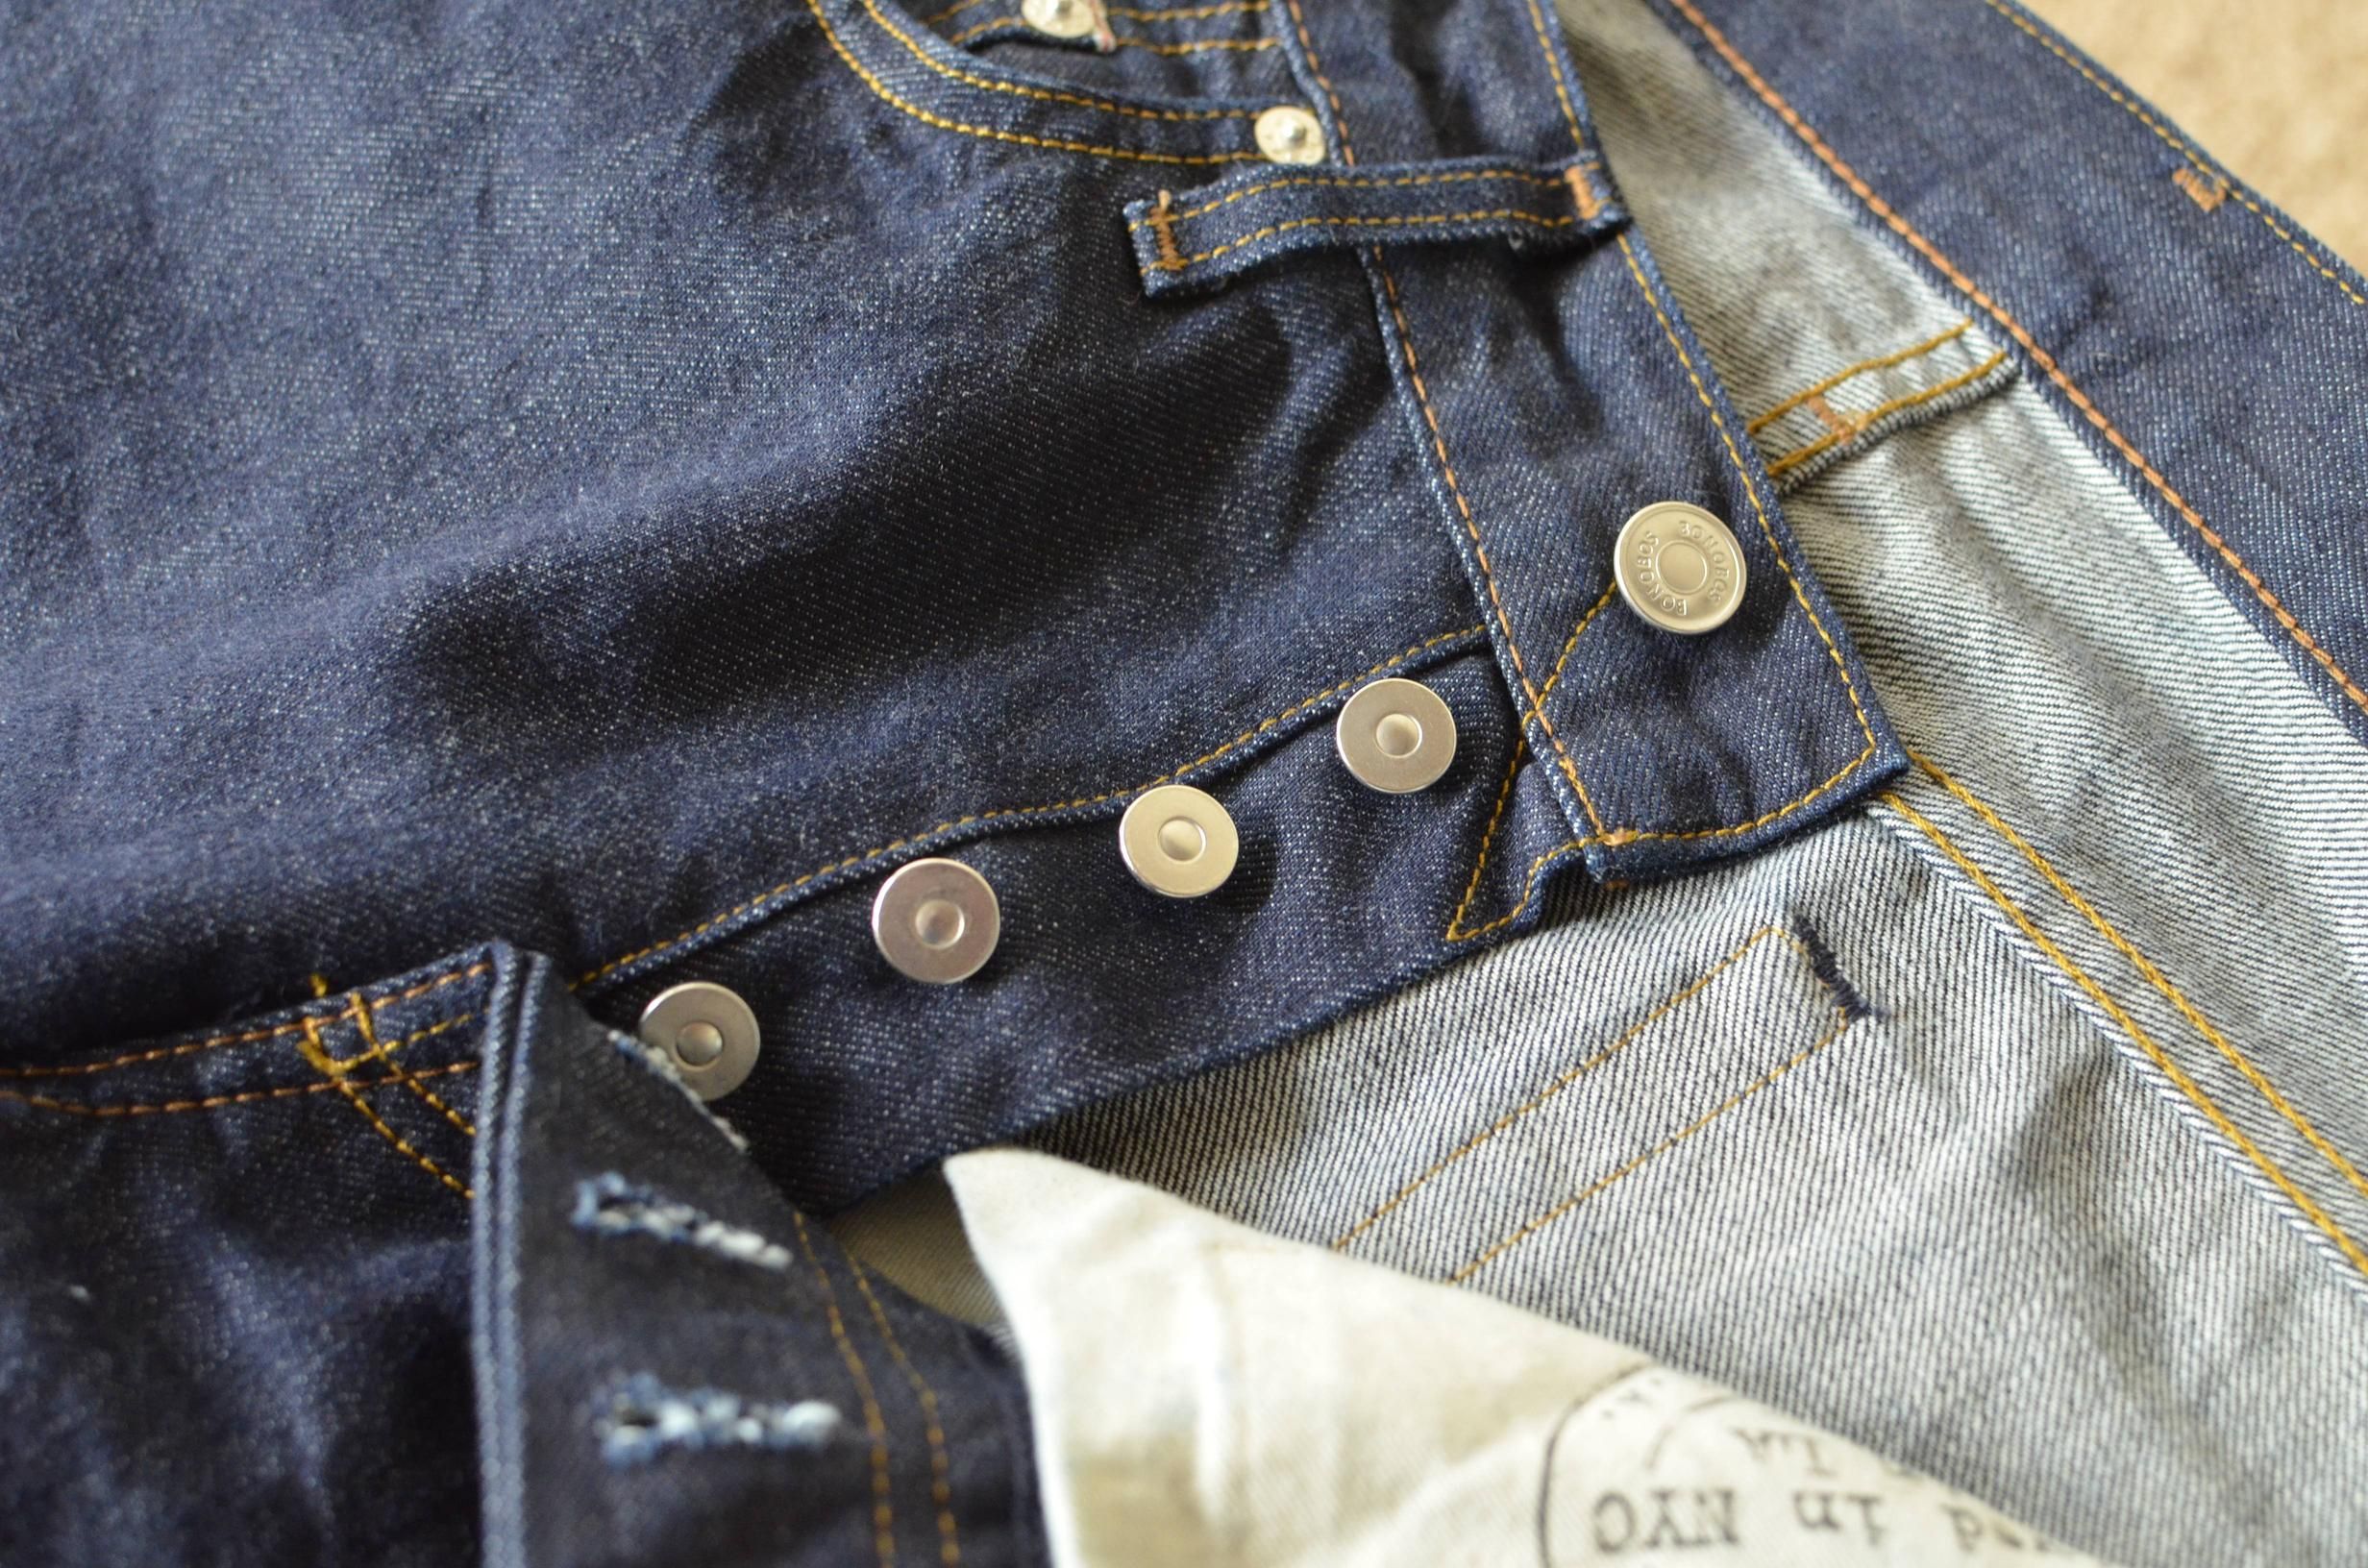 button zipper jeans